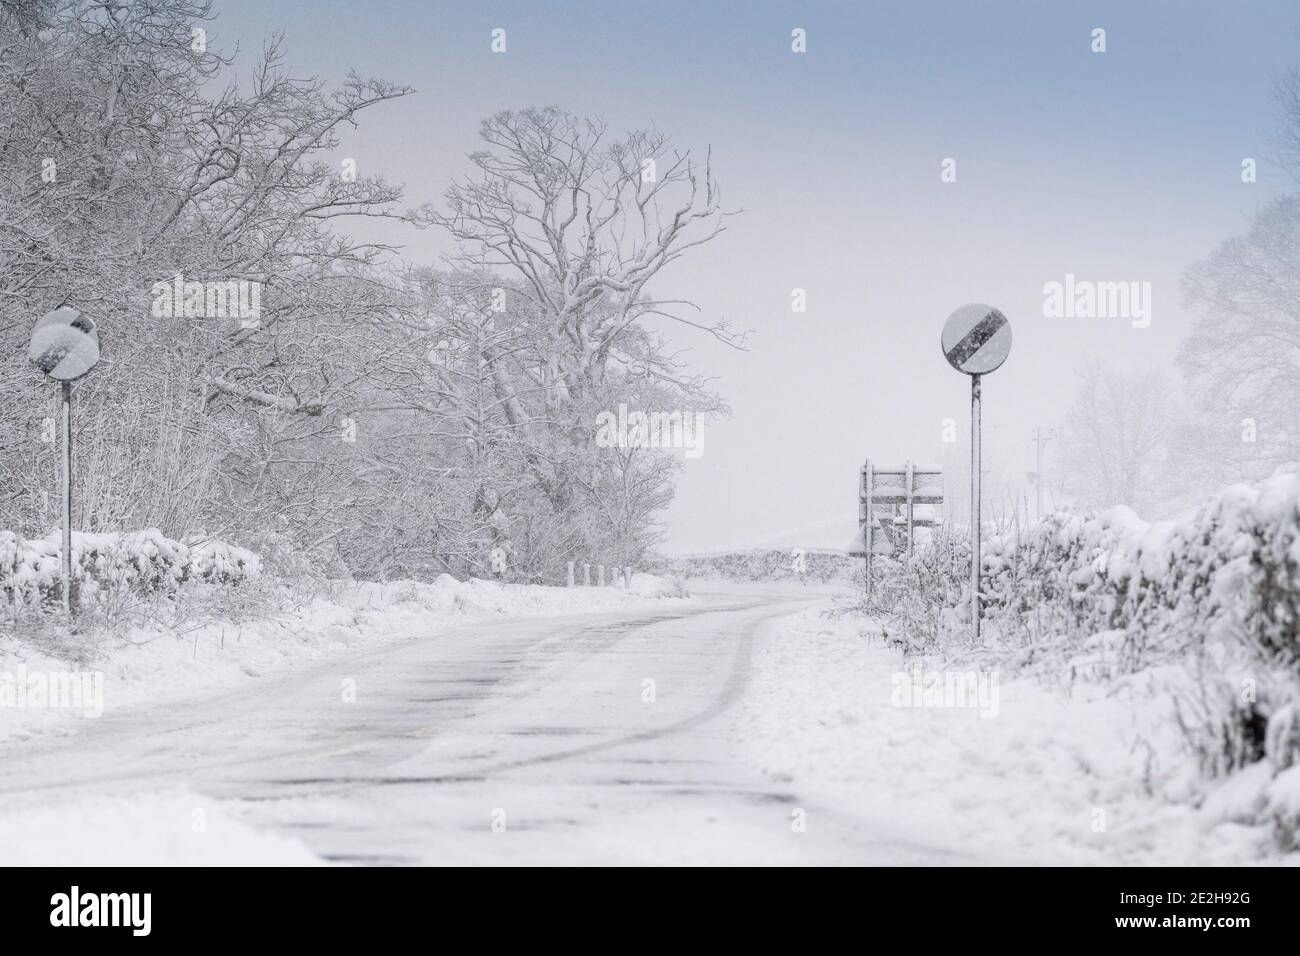 Wetter - Hawes, North Yorkshire, 14. Januar 2021 - die A684, die Hauptroute nach Wensleydale in den Yorkshire Dales, war stark von Schneefall betroffen, da die gemeinderegitter und die lokalen Bauern ihr Bestes gaben, um die Straße passierbar zu halten. Quelle: Wayne HUTCHINSON/Alamy Live News Stockfoto